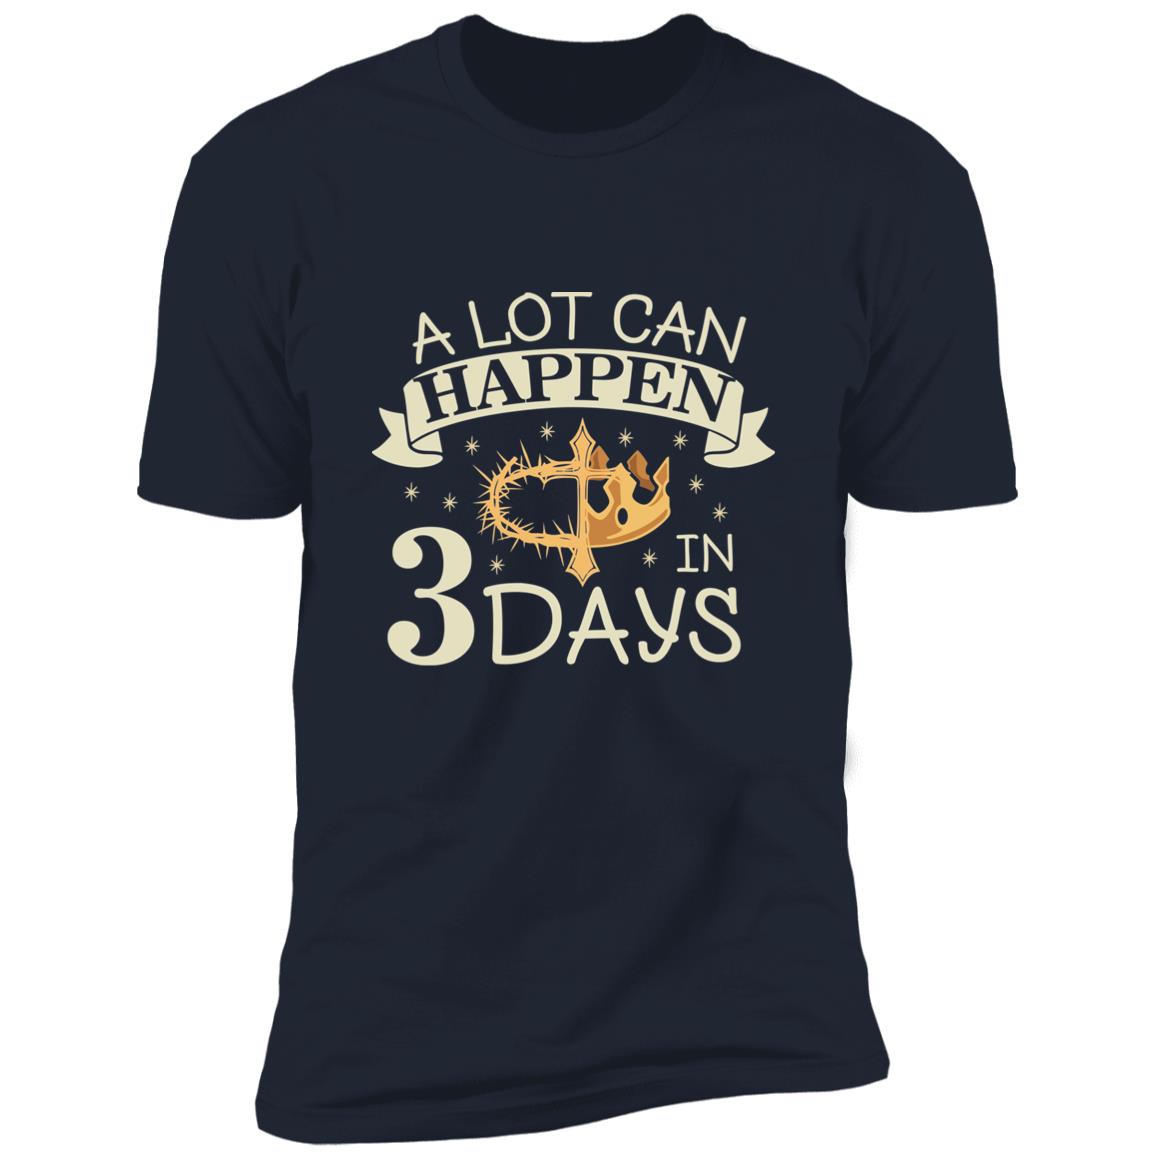 3 Days - Premium Short Sleeve T-Shirt